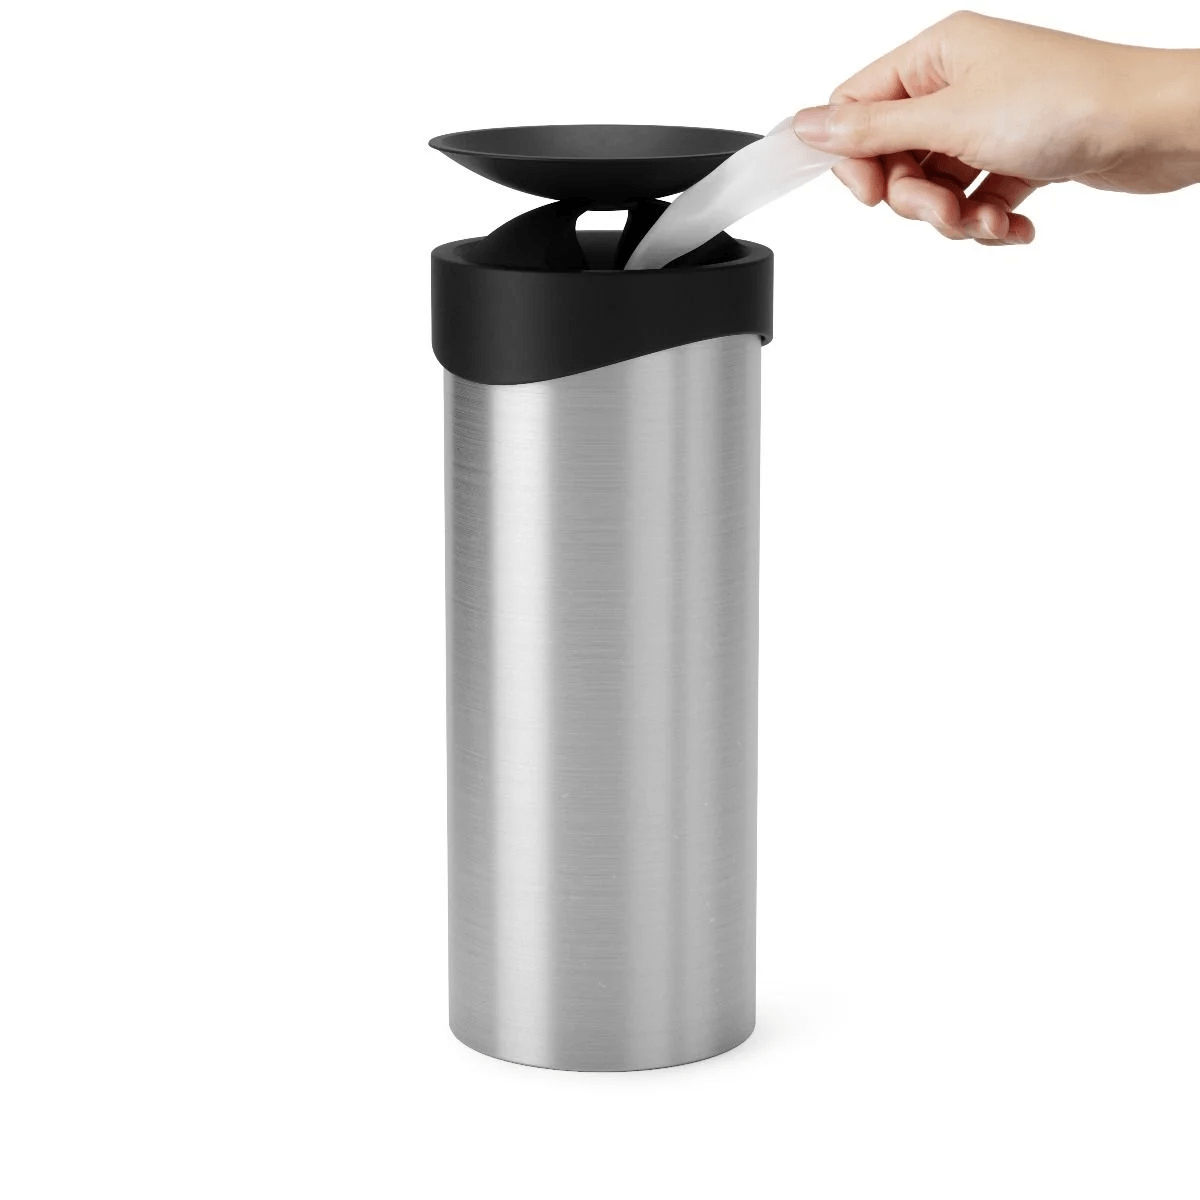 Swiper Cromo - Dispenser de Lenços Umedecidos ou Panos de Limpeza Cromado